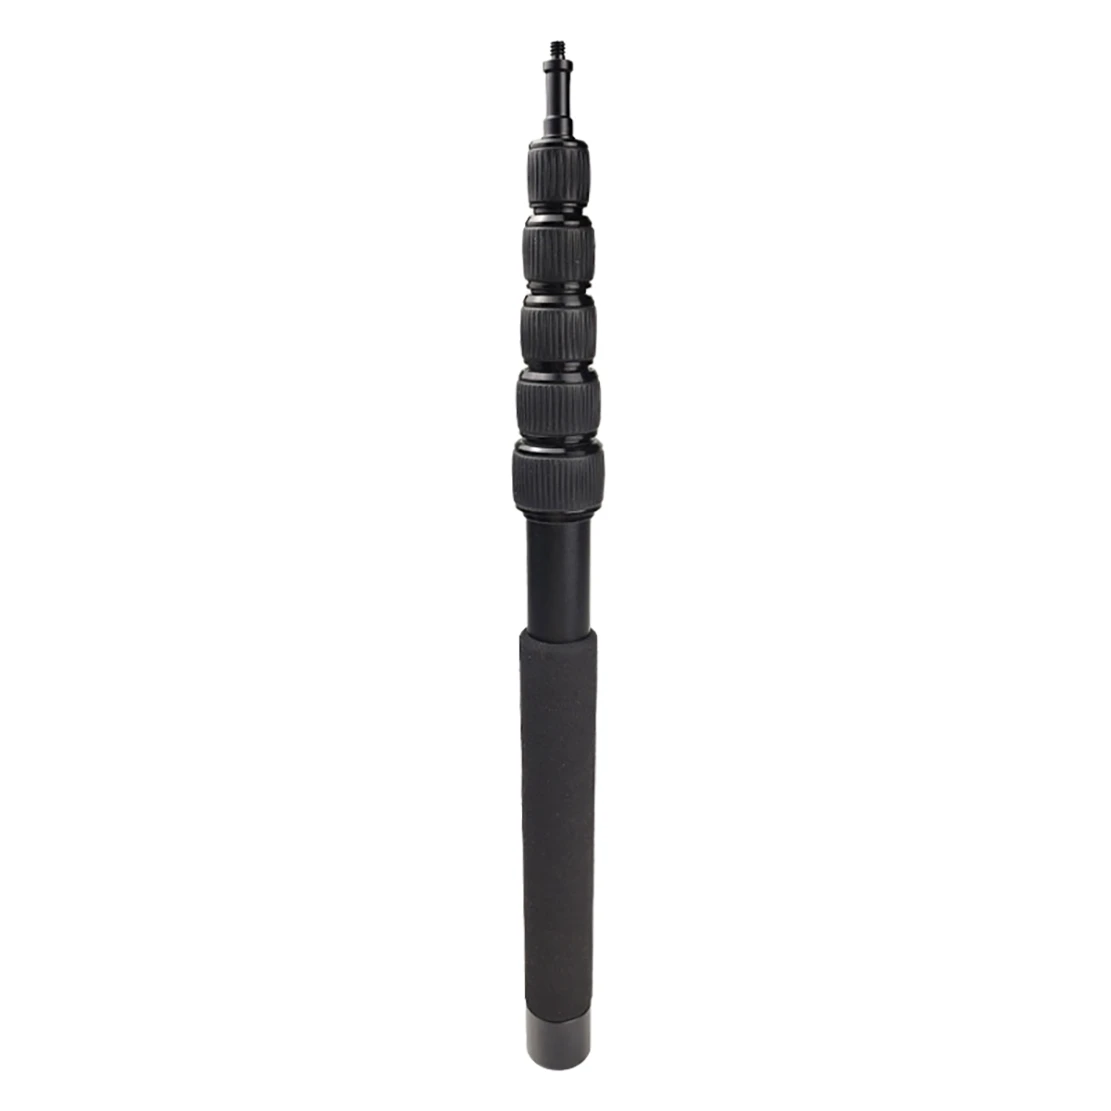 

Стрела для микрофона, Выдвижная рукоятка для микрофона с 6 секциями, с резьбой 1/4 дюйма, держатель-подставка для микрофона длиной до 6,5 футов